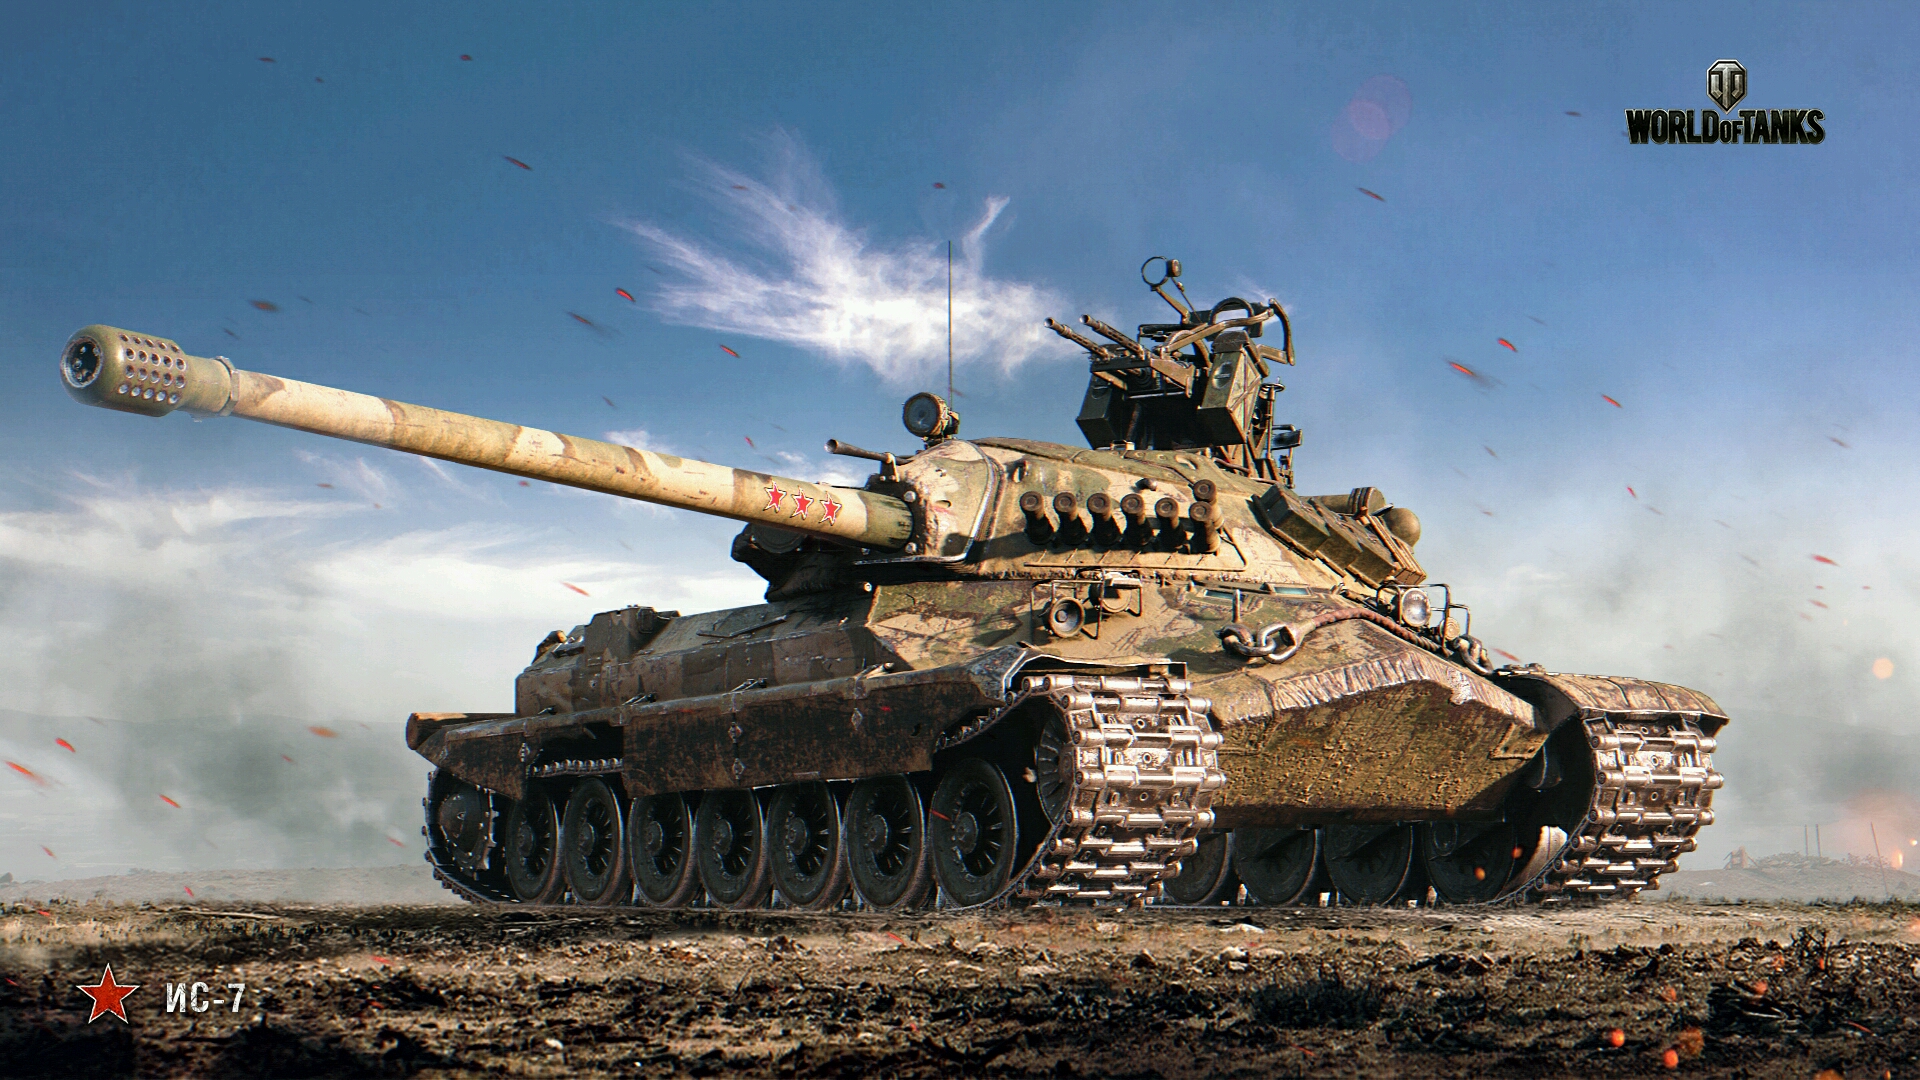 坦克世界官网9月壁纸—威武霸气的T-62A_坦克世界_17173.com中国游戏门户站